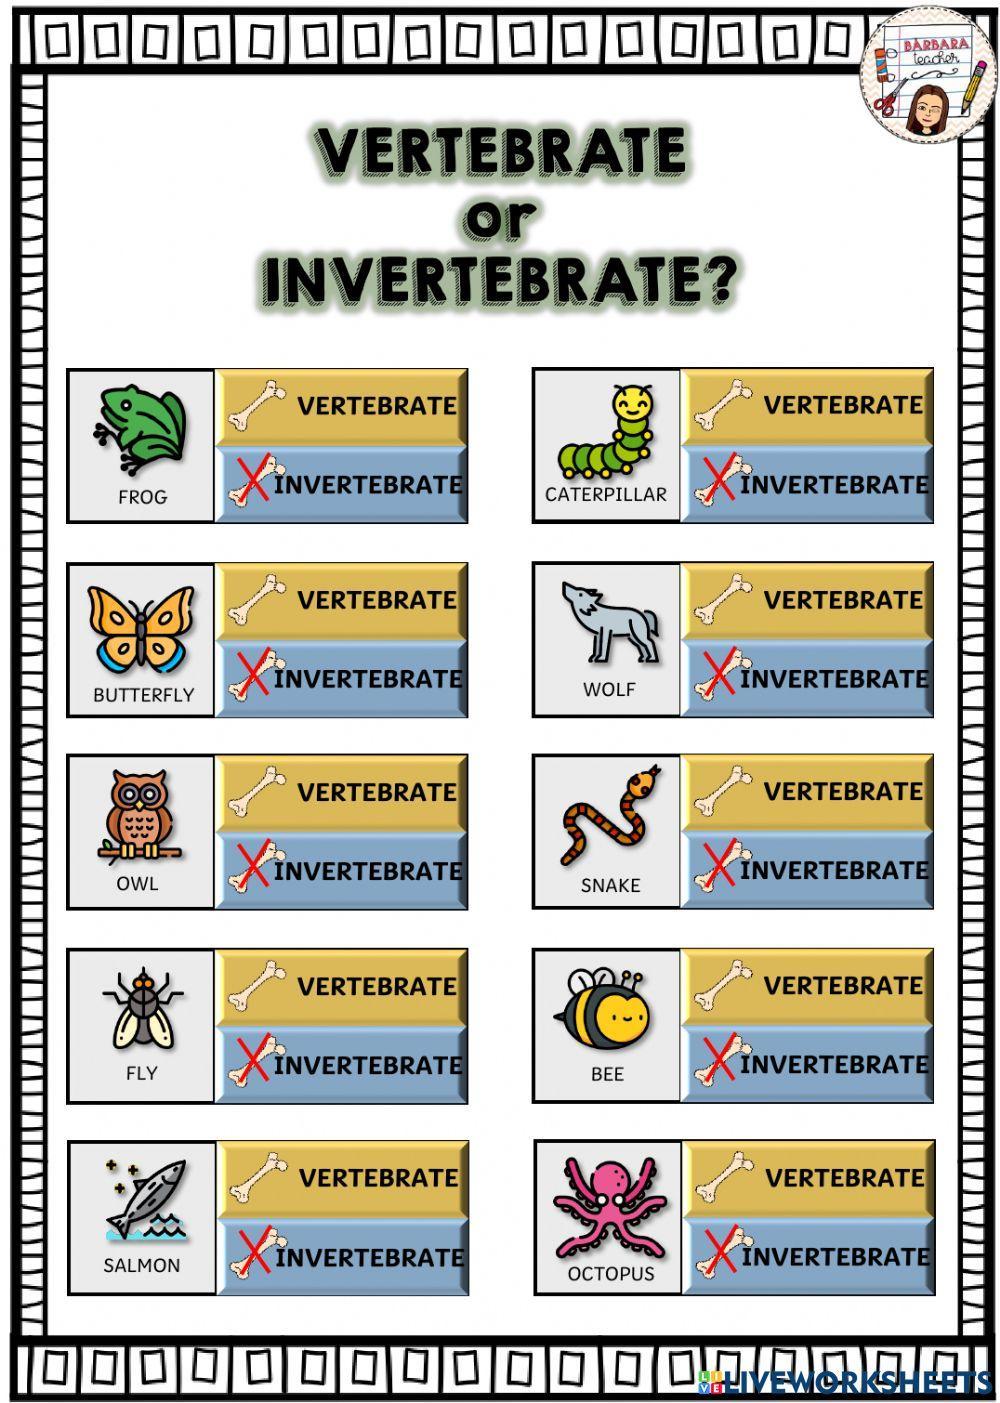 Vertebrate or invertebrate animal